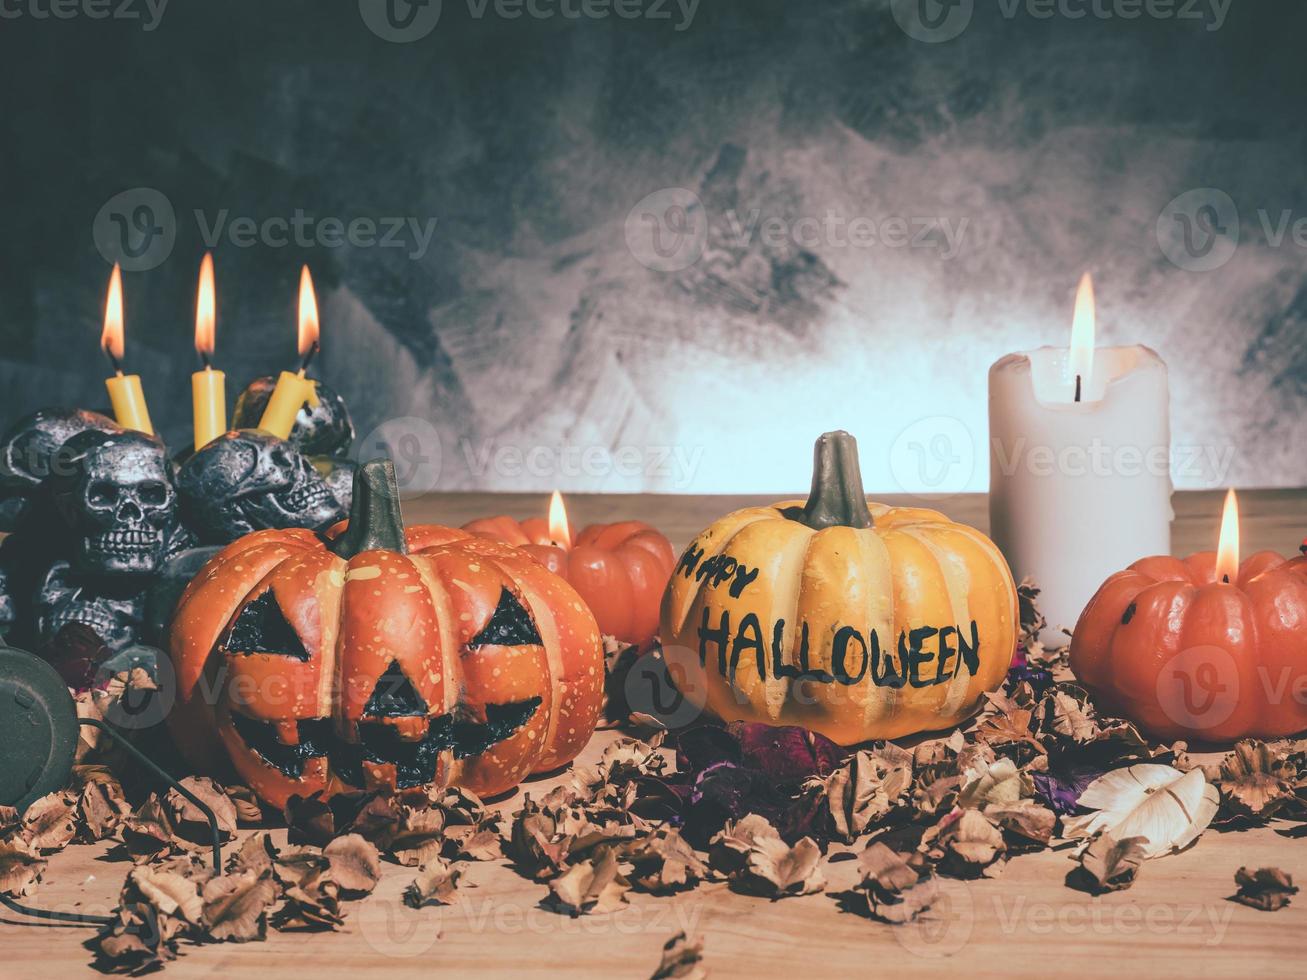 citrouilles d'halloween aux chandelles et crânes sur fond sombre. photo